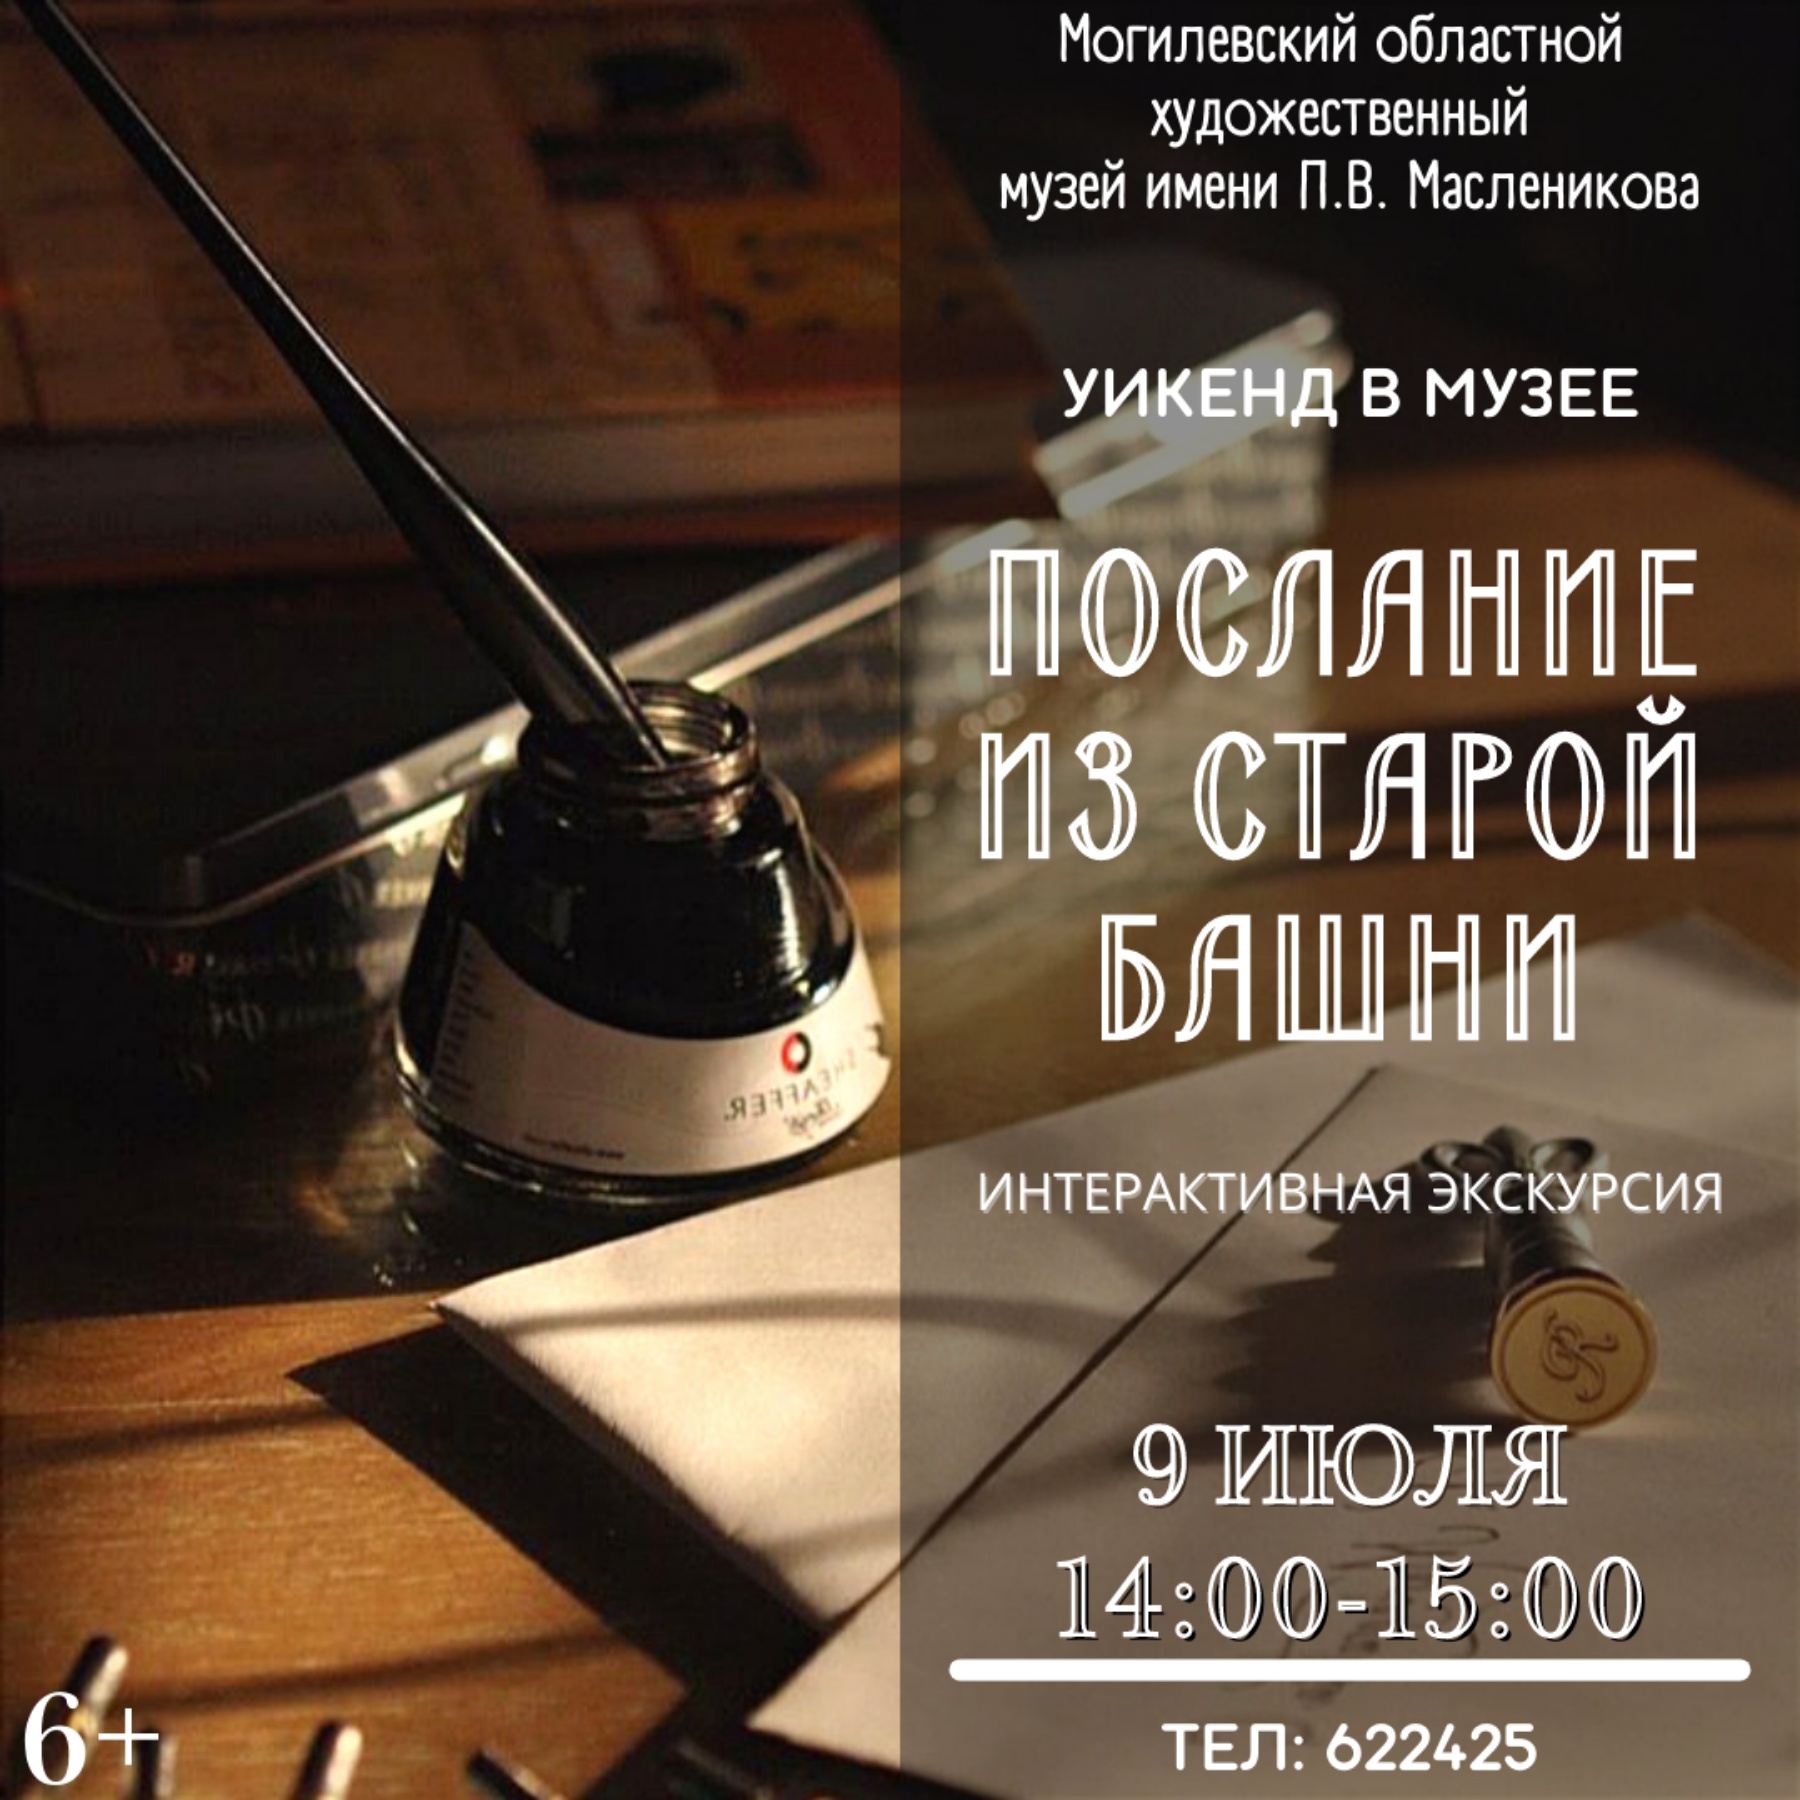 На «Уикенд в музее» приглашает могилевчан музей им. П.В.Масленикова 9 и 10 июля